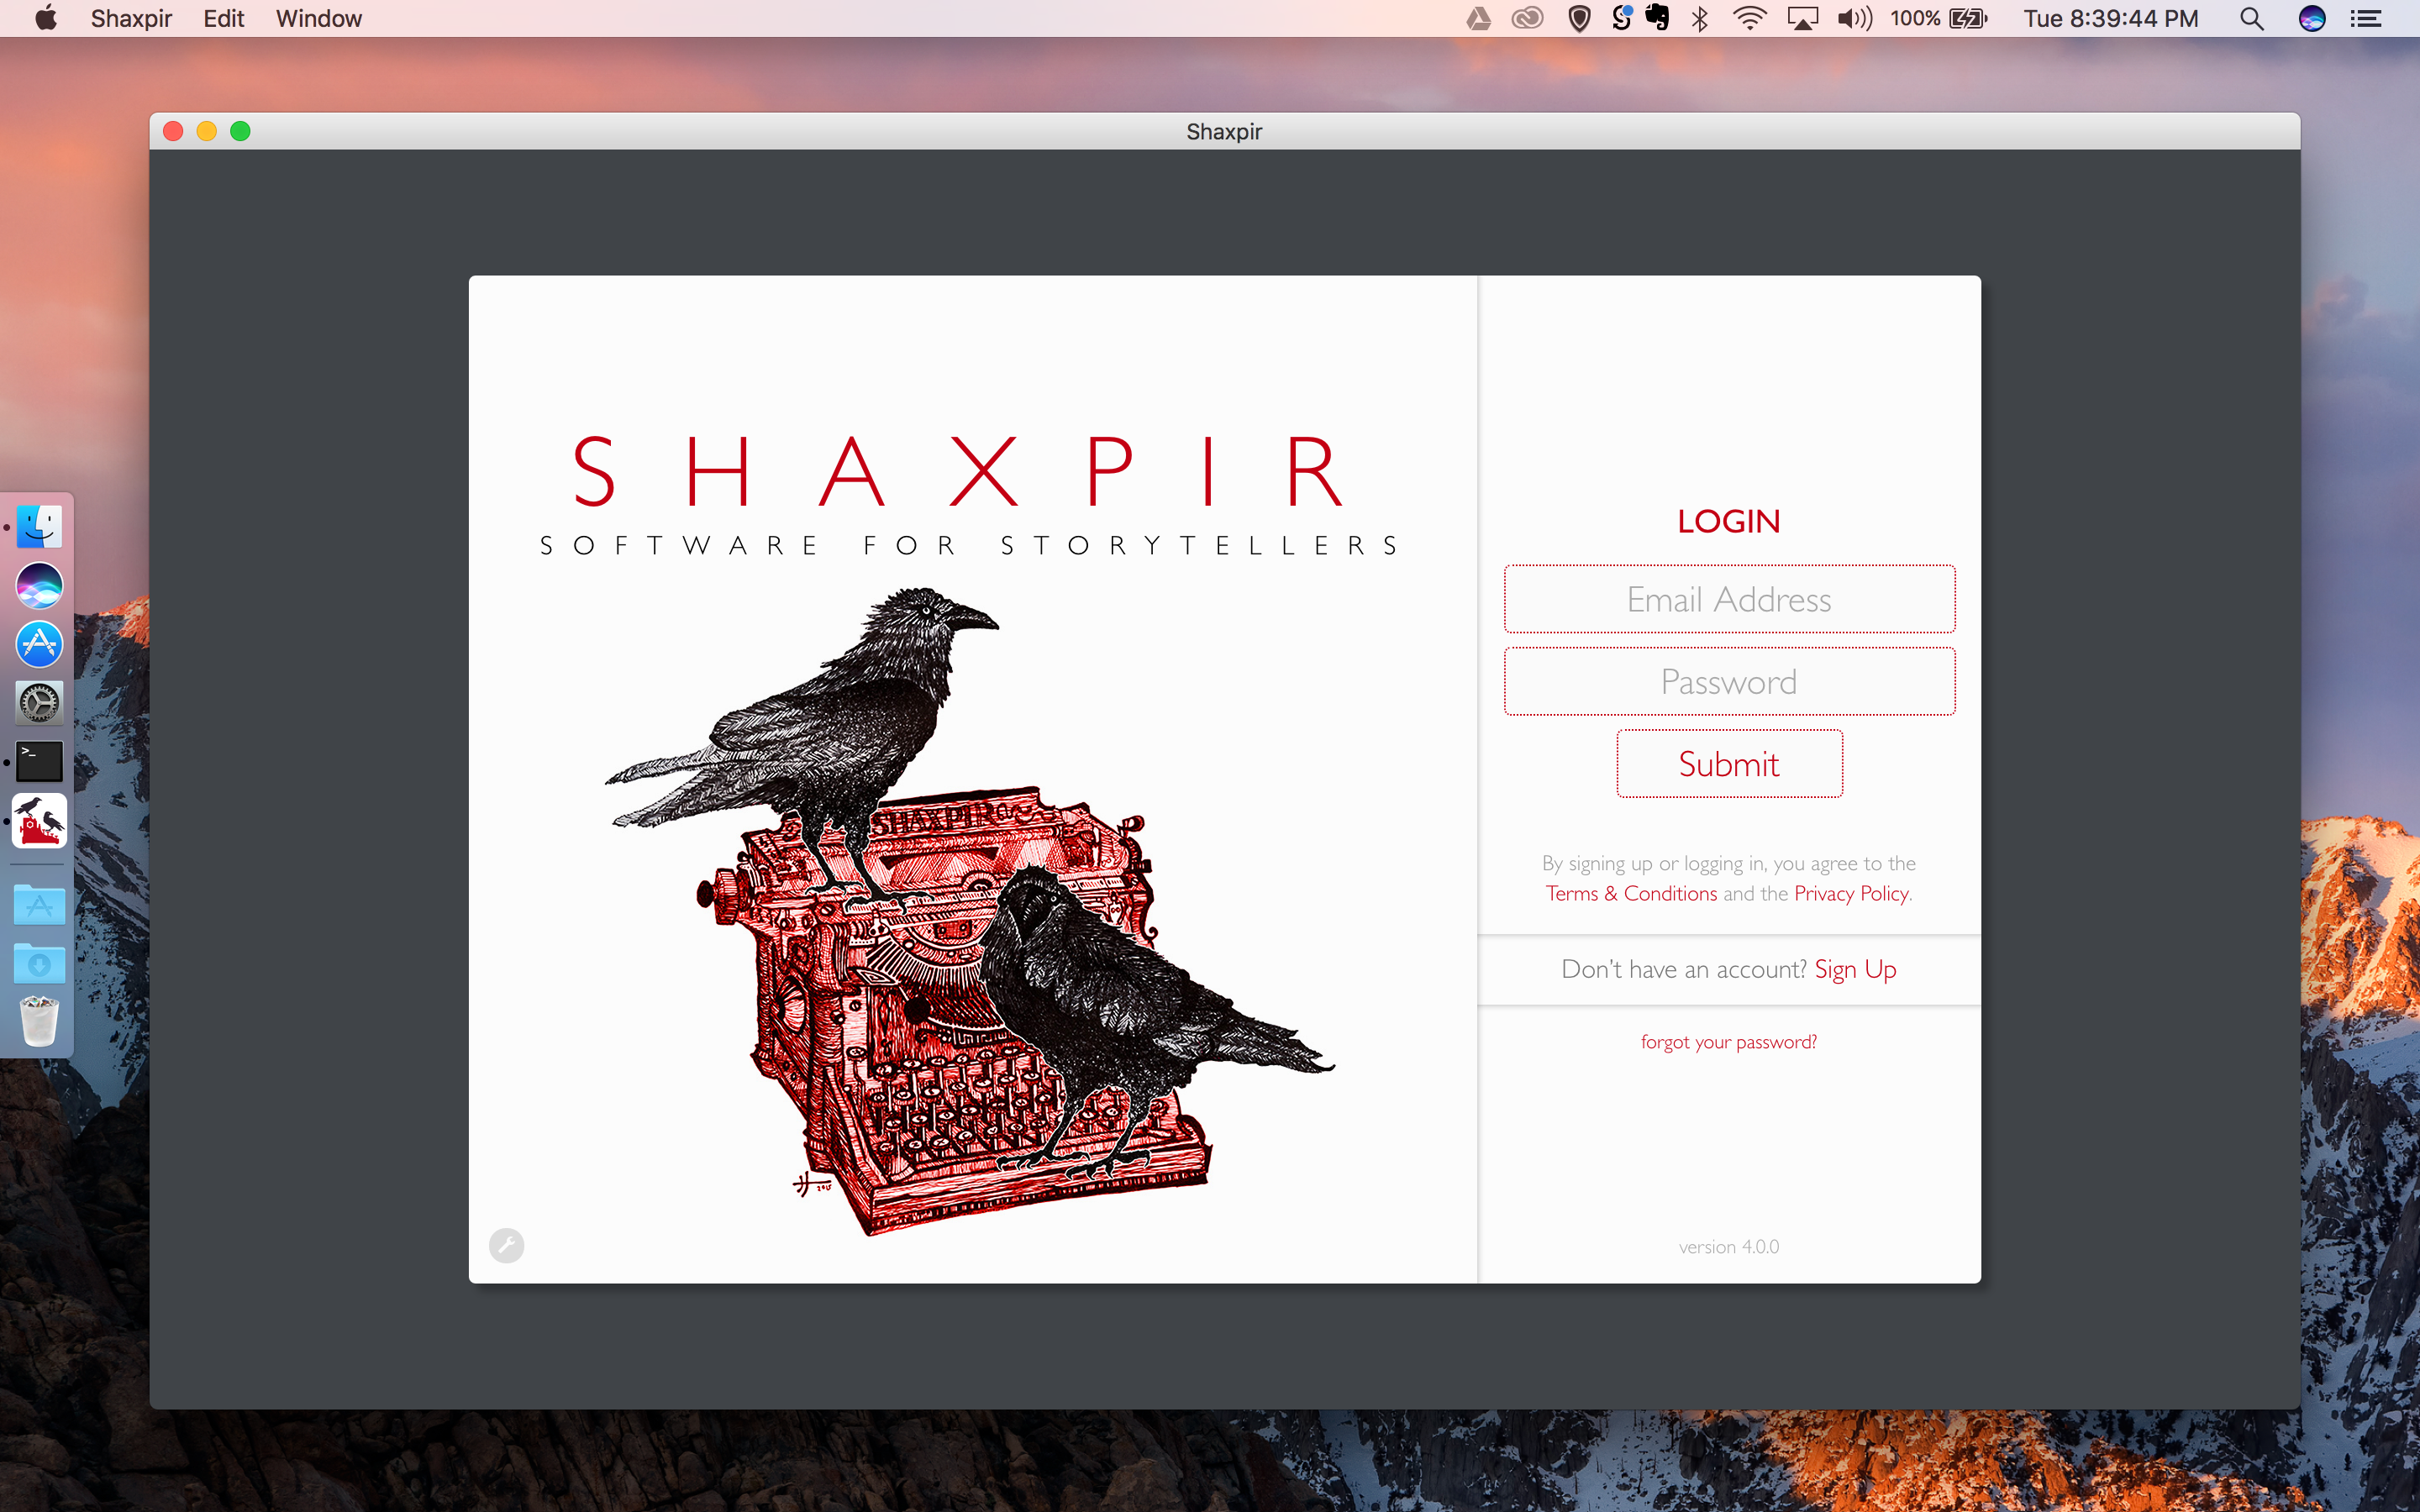 SHAXPIR on Macintosh